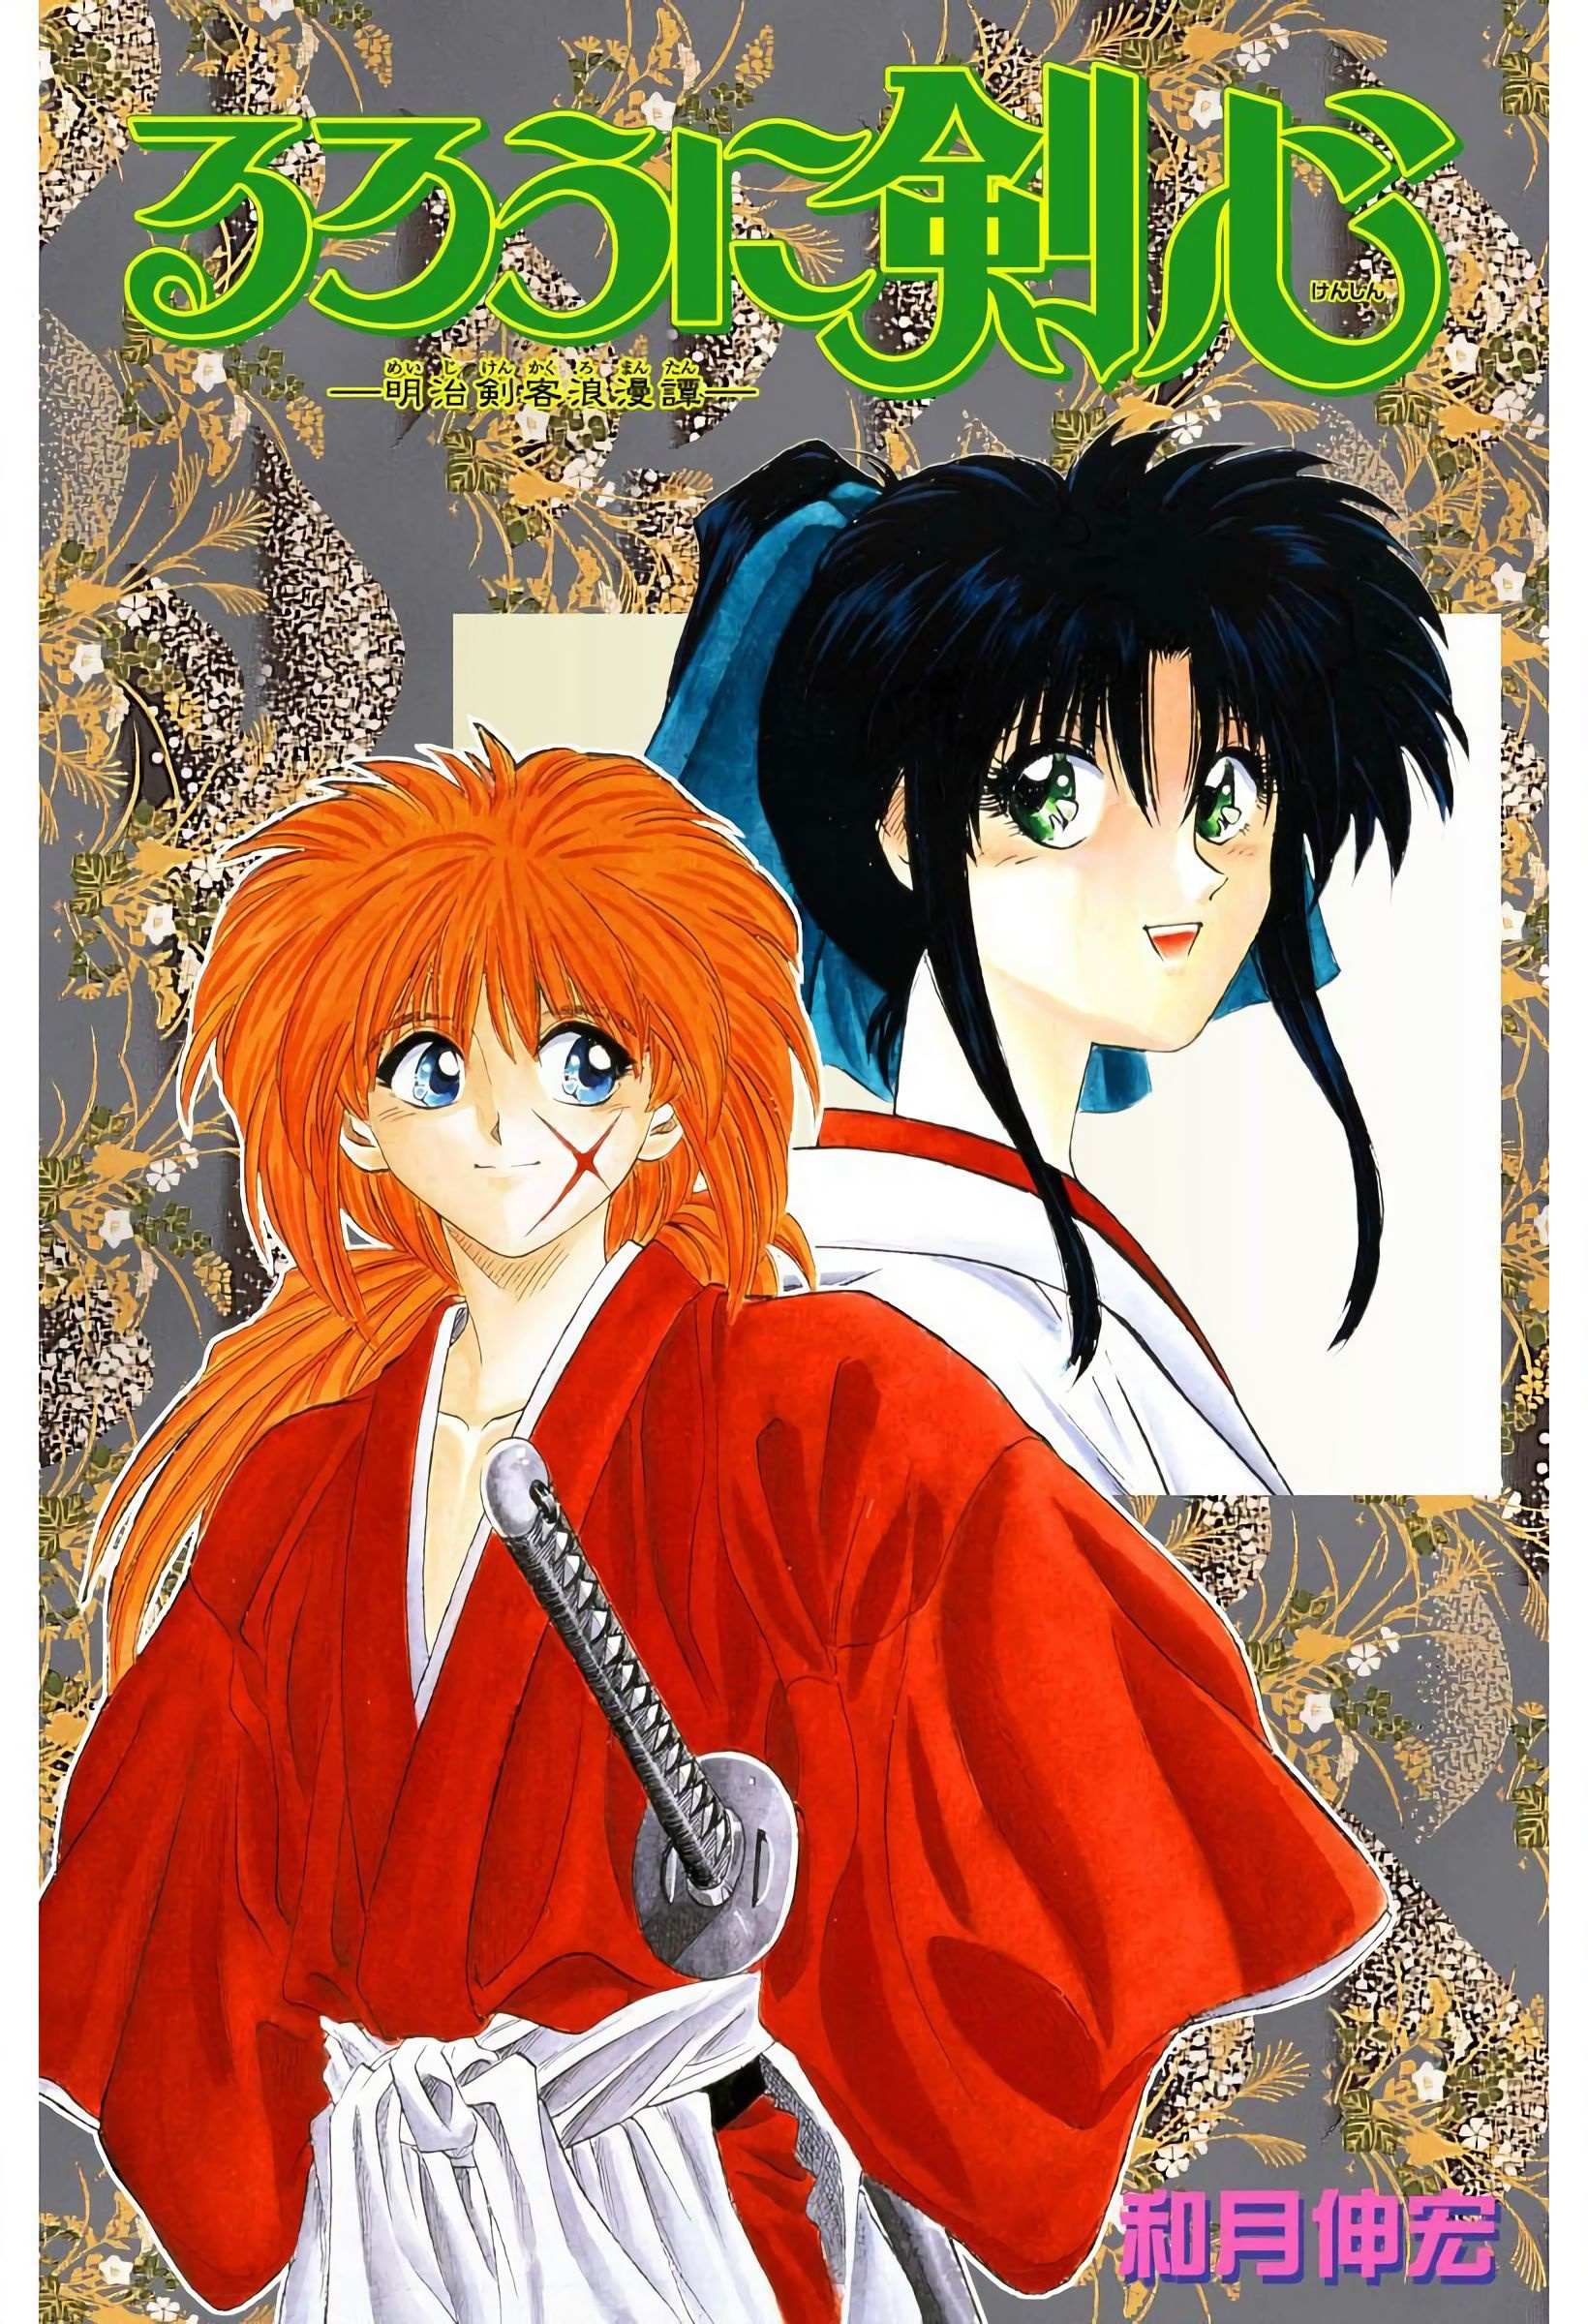 Rurouni Kenshin: Meiji Kenkaku Romantan - Digital Colored - chapter 1 - #2